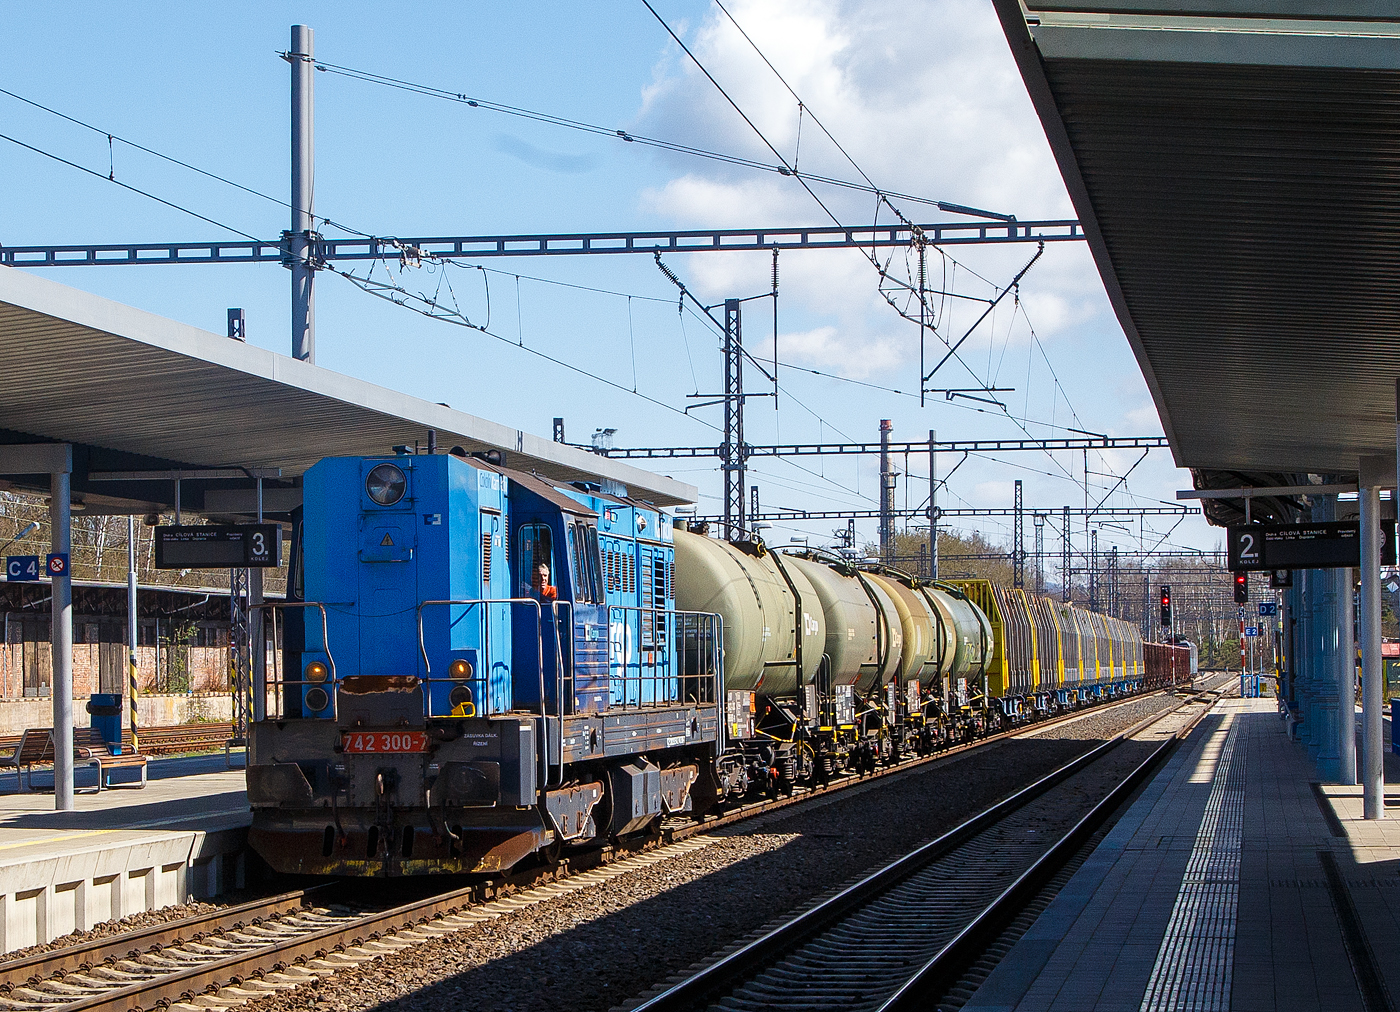 Die 742 300-7 (CZ- ČDC 92 54 2 742 300-7) der ČD Cargo, ex ČSD T 466.2300, fhrt am 19 April 2023, mit einem gemischten Gterzug, sowie am Zugschluss noch die beiden „kalten“ elektrischen Zweisystemlokomotiven 363 530-7 und 363 524-0, durch den Bahnhof Karlovy Vary (Karlsbad) in Richtung Nov Sedlo u Lokte.

Die  Tranzisto  wurde 1983 von ČKD in Prag unter der Fabriknummer 12734 gebaut.
